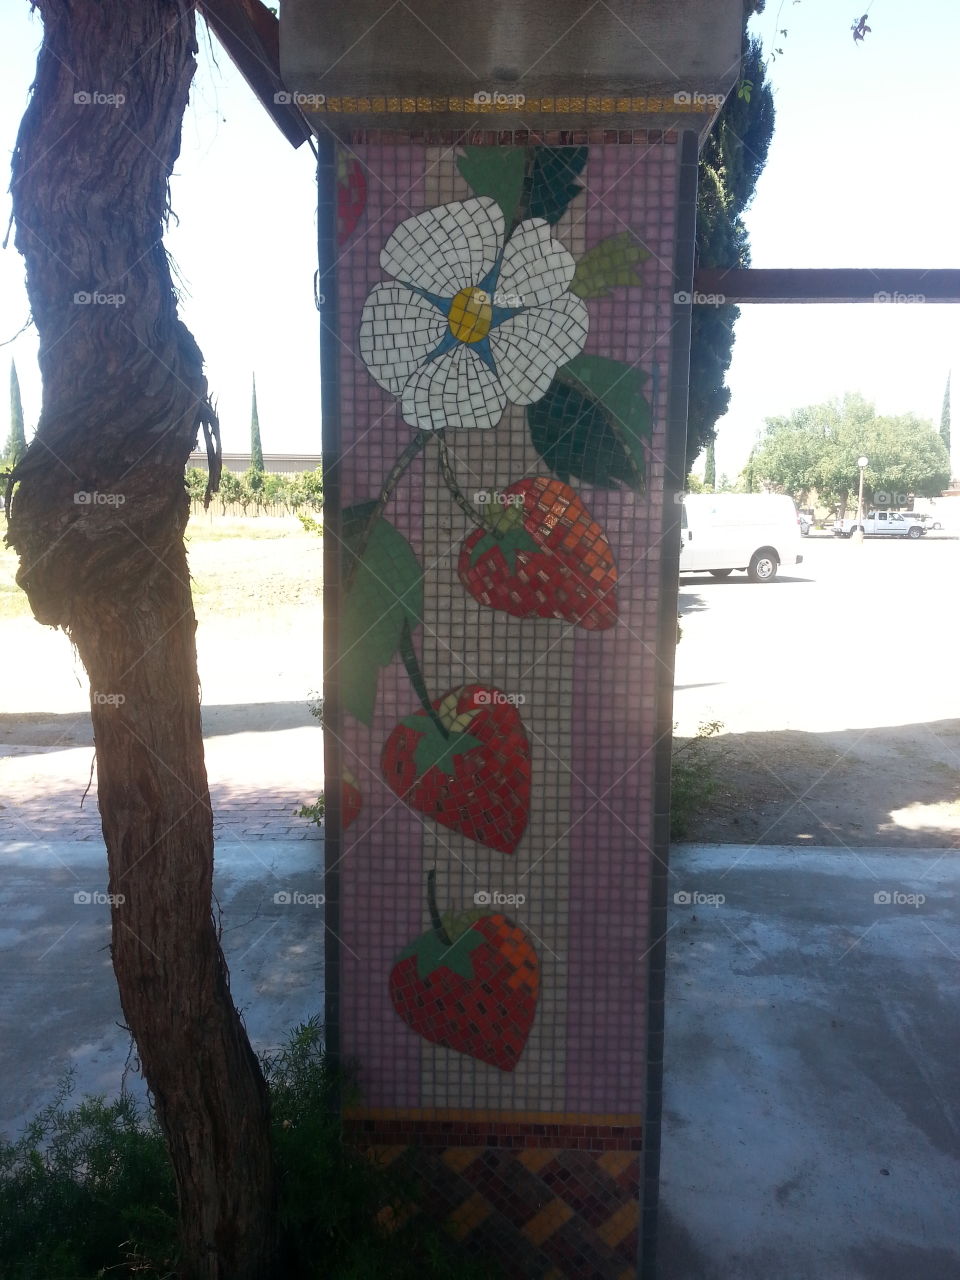 strawberry mosaic